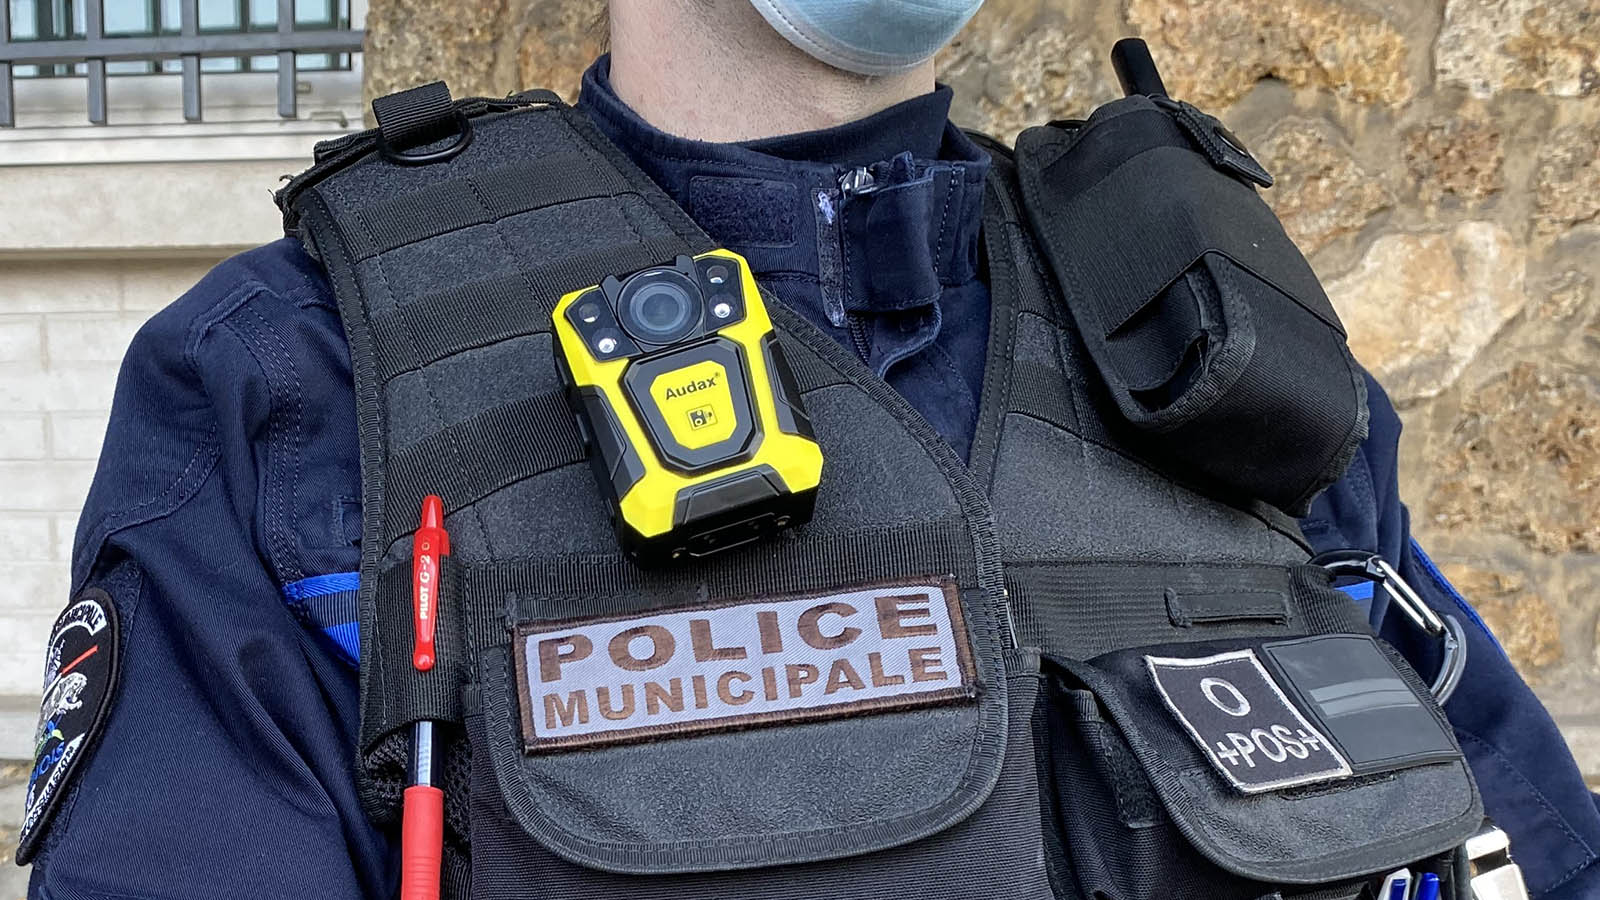 Des caméras-piétons pour protéger la police municipale ?